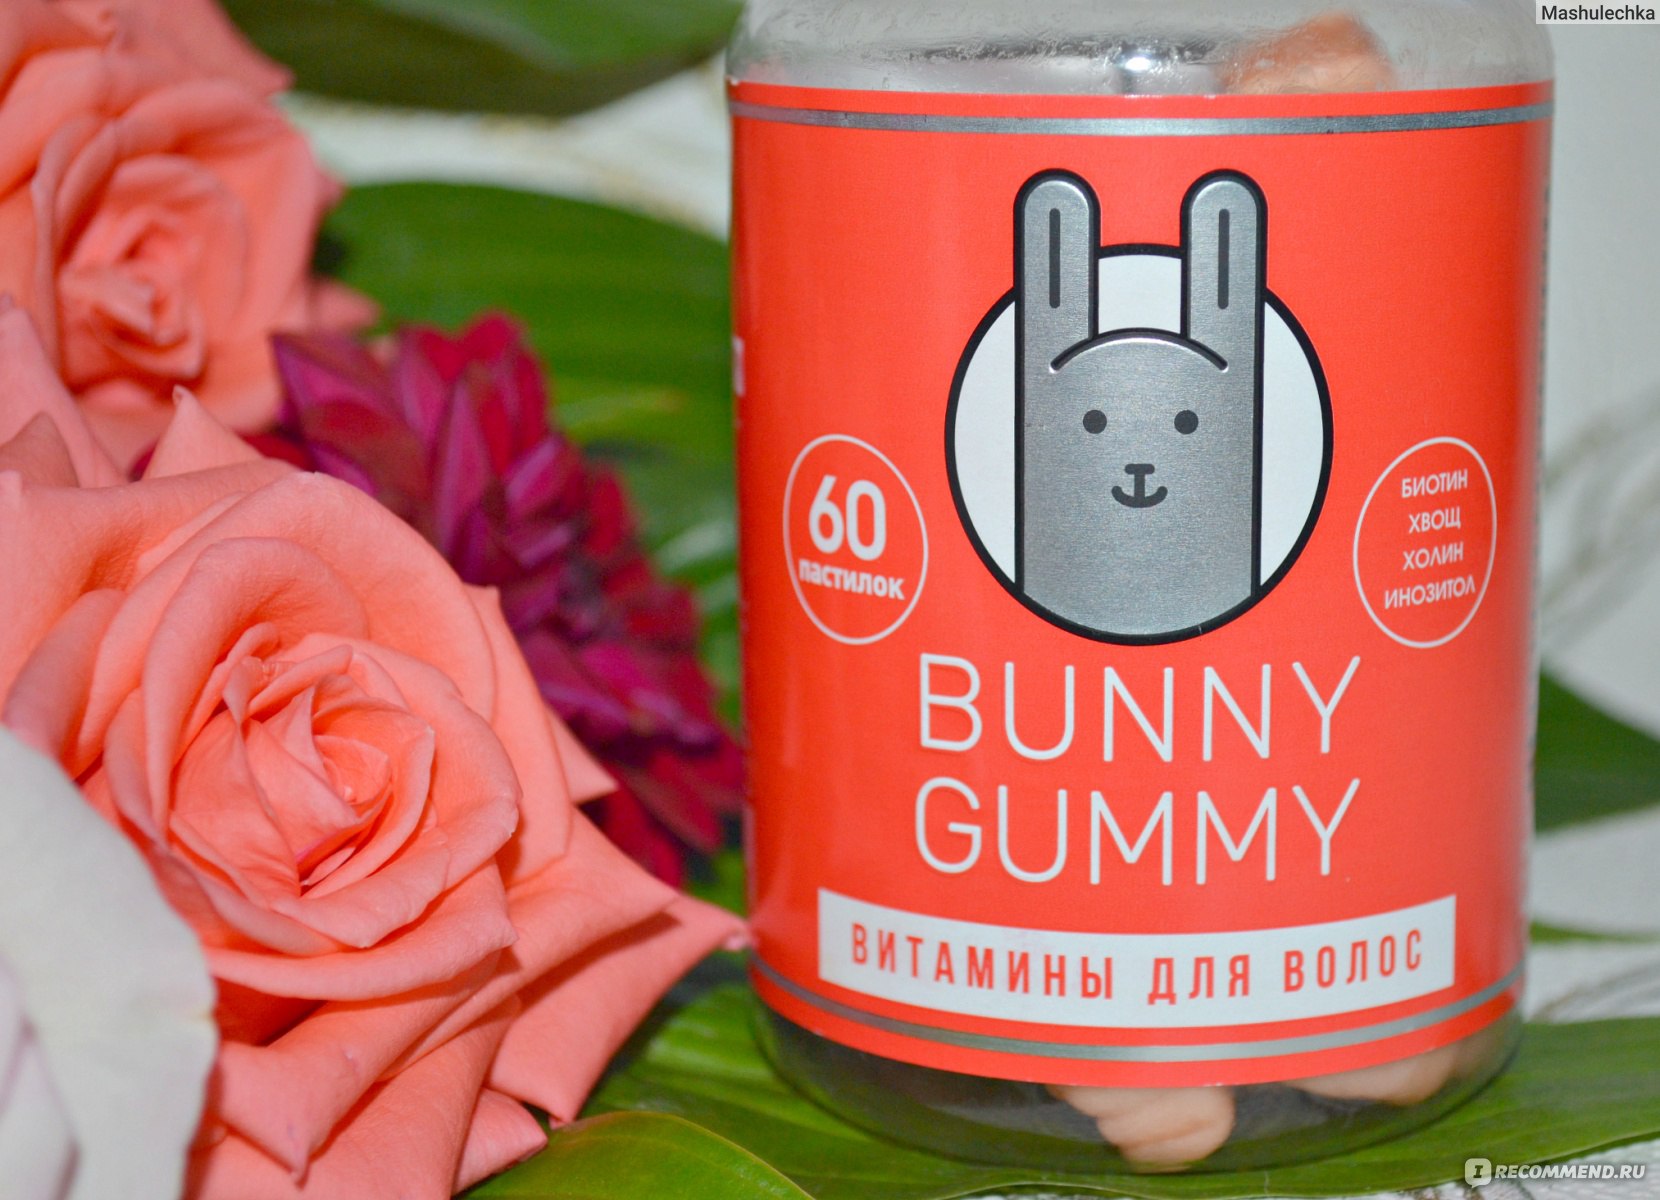 Очень вкусные и полезные витаминки,- Bunny Gummy, очень сложно удержаться и...